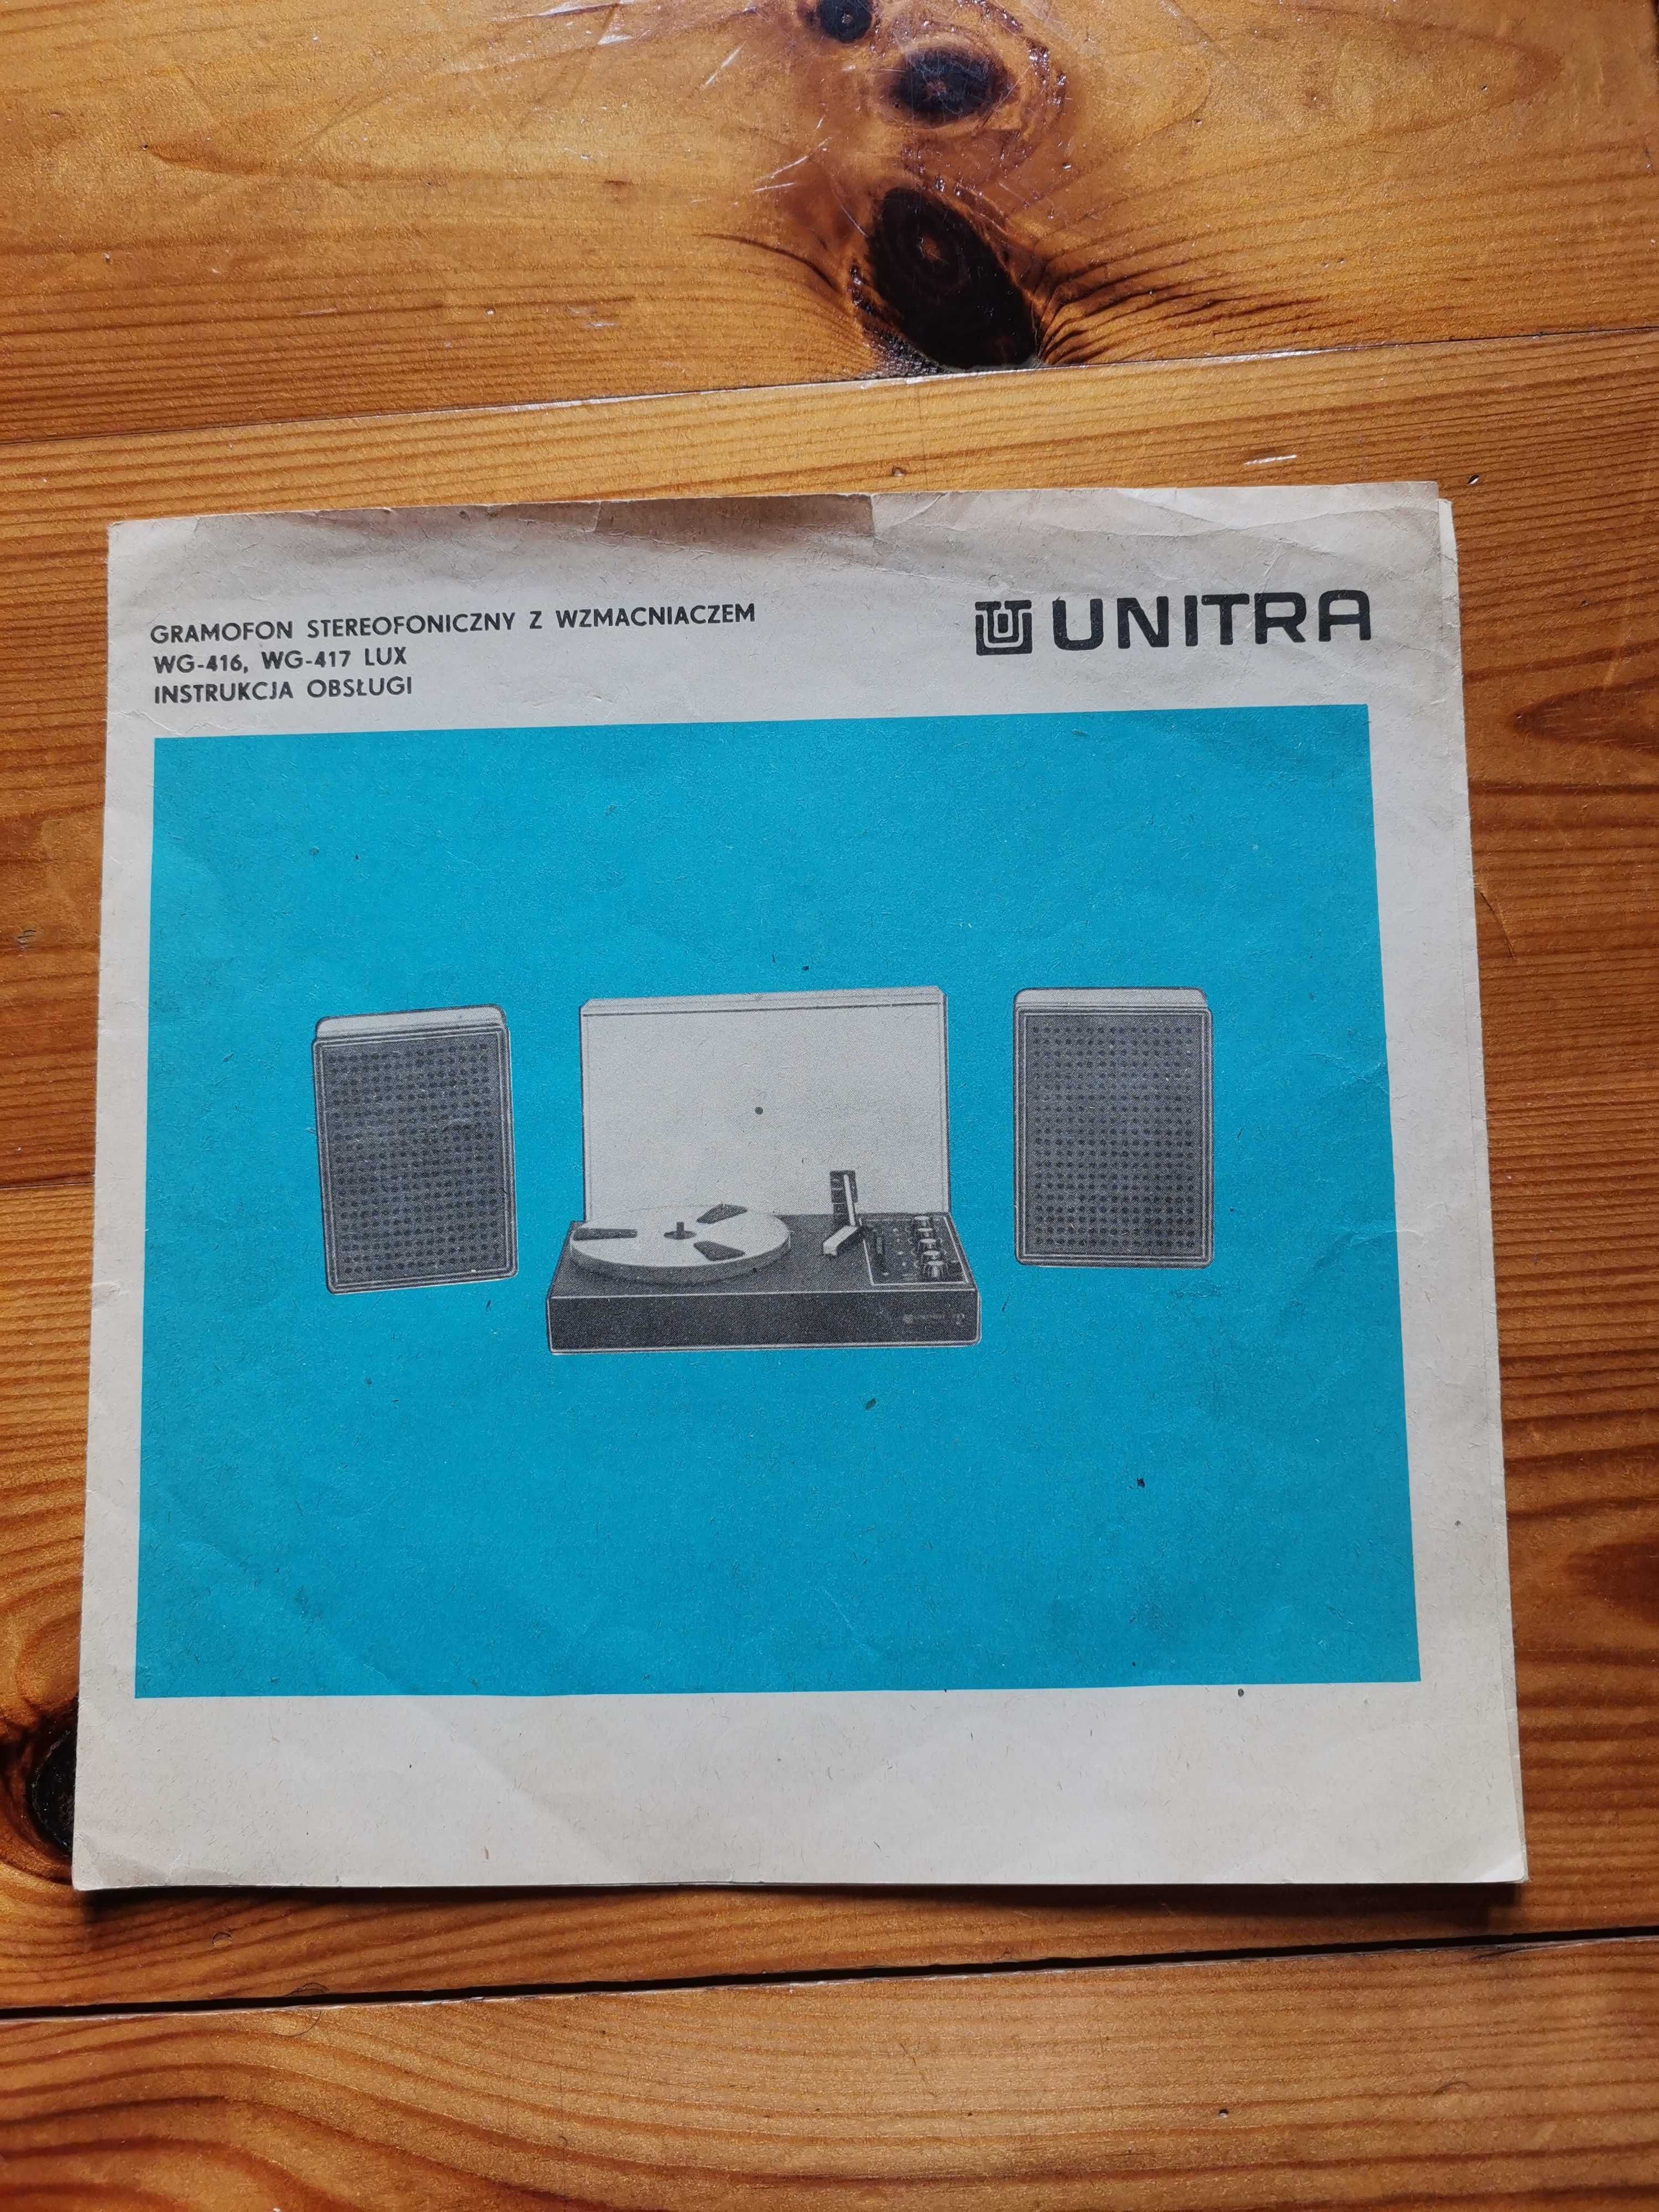 Instr. obsługi Unitra-gramofon stereo z wzmacniaczem WG416, WG417 Lux